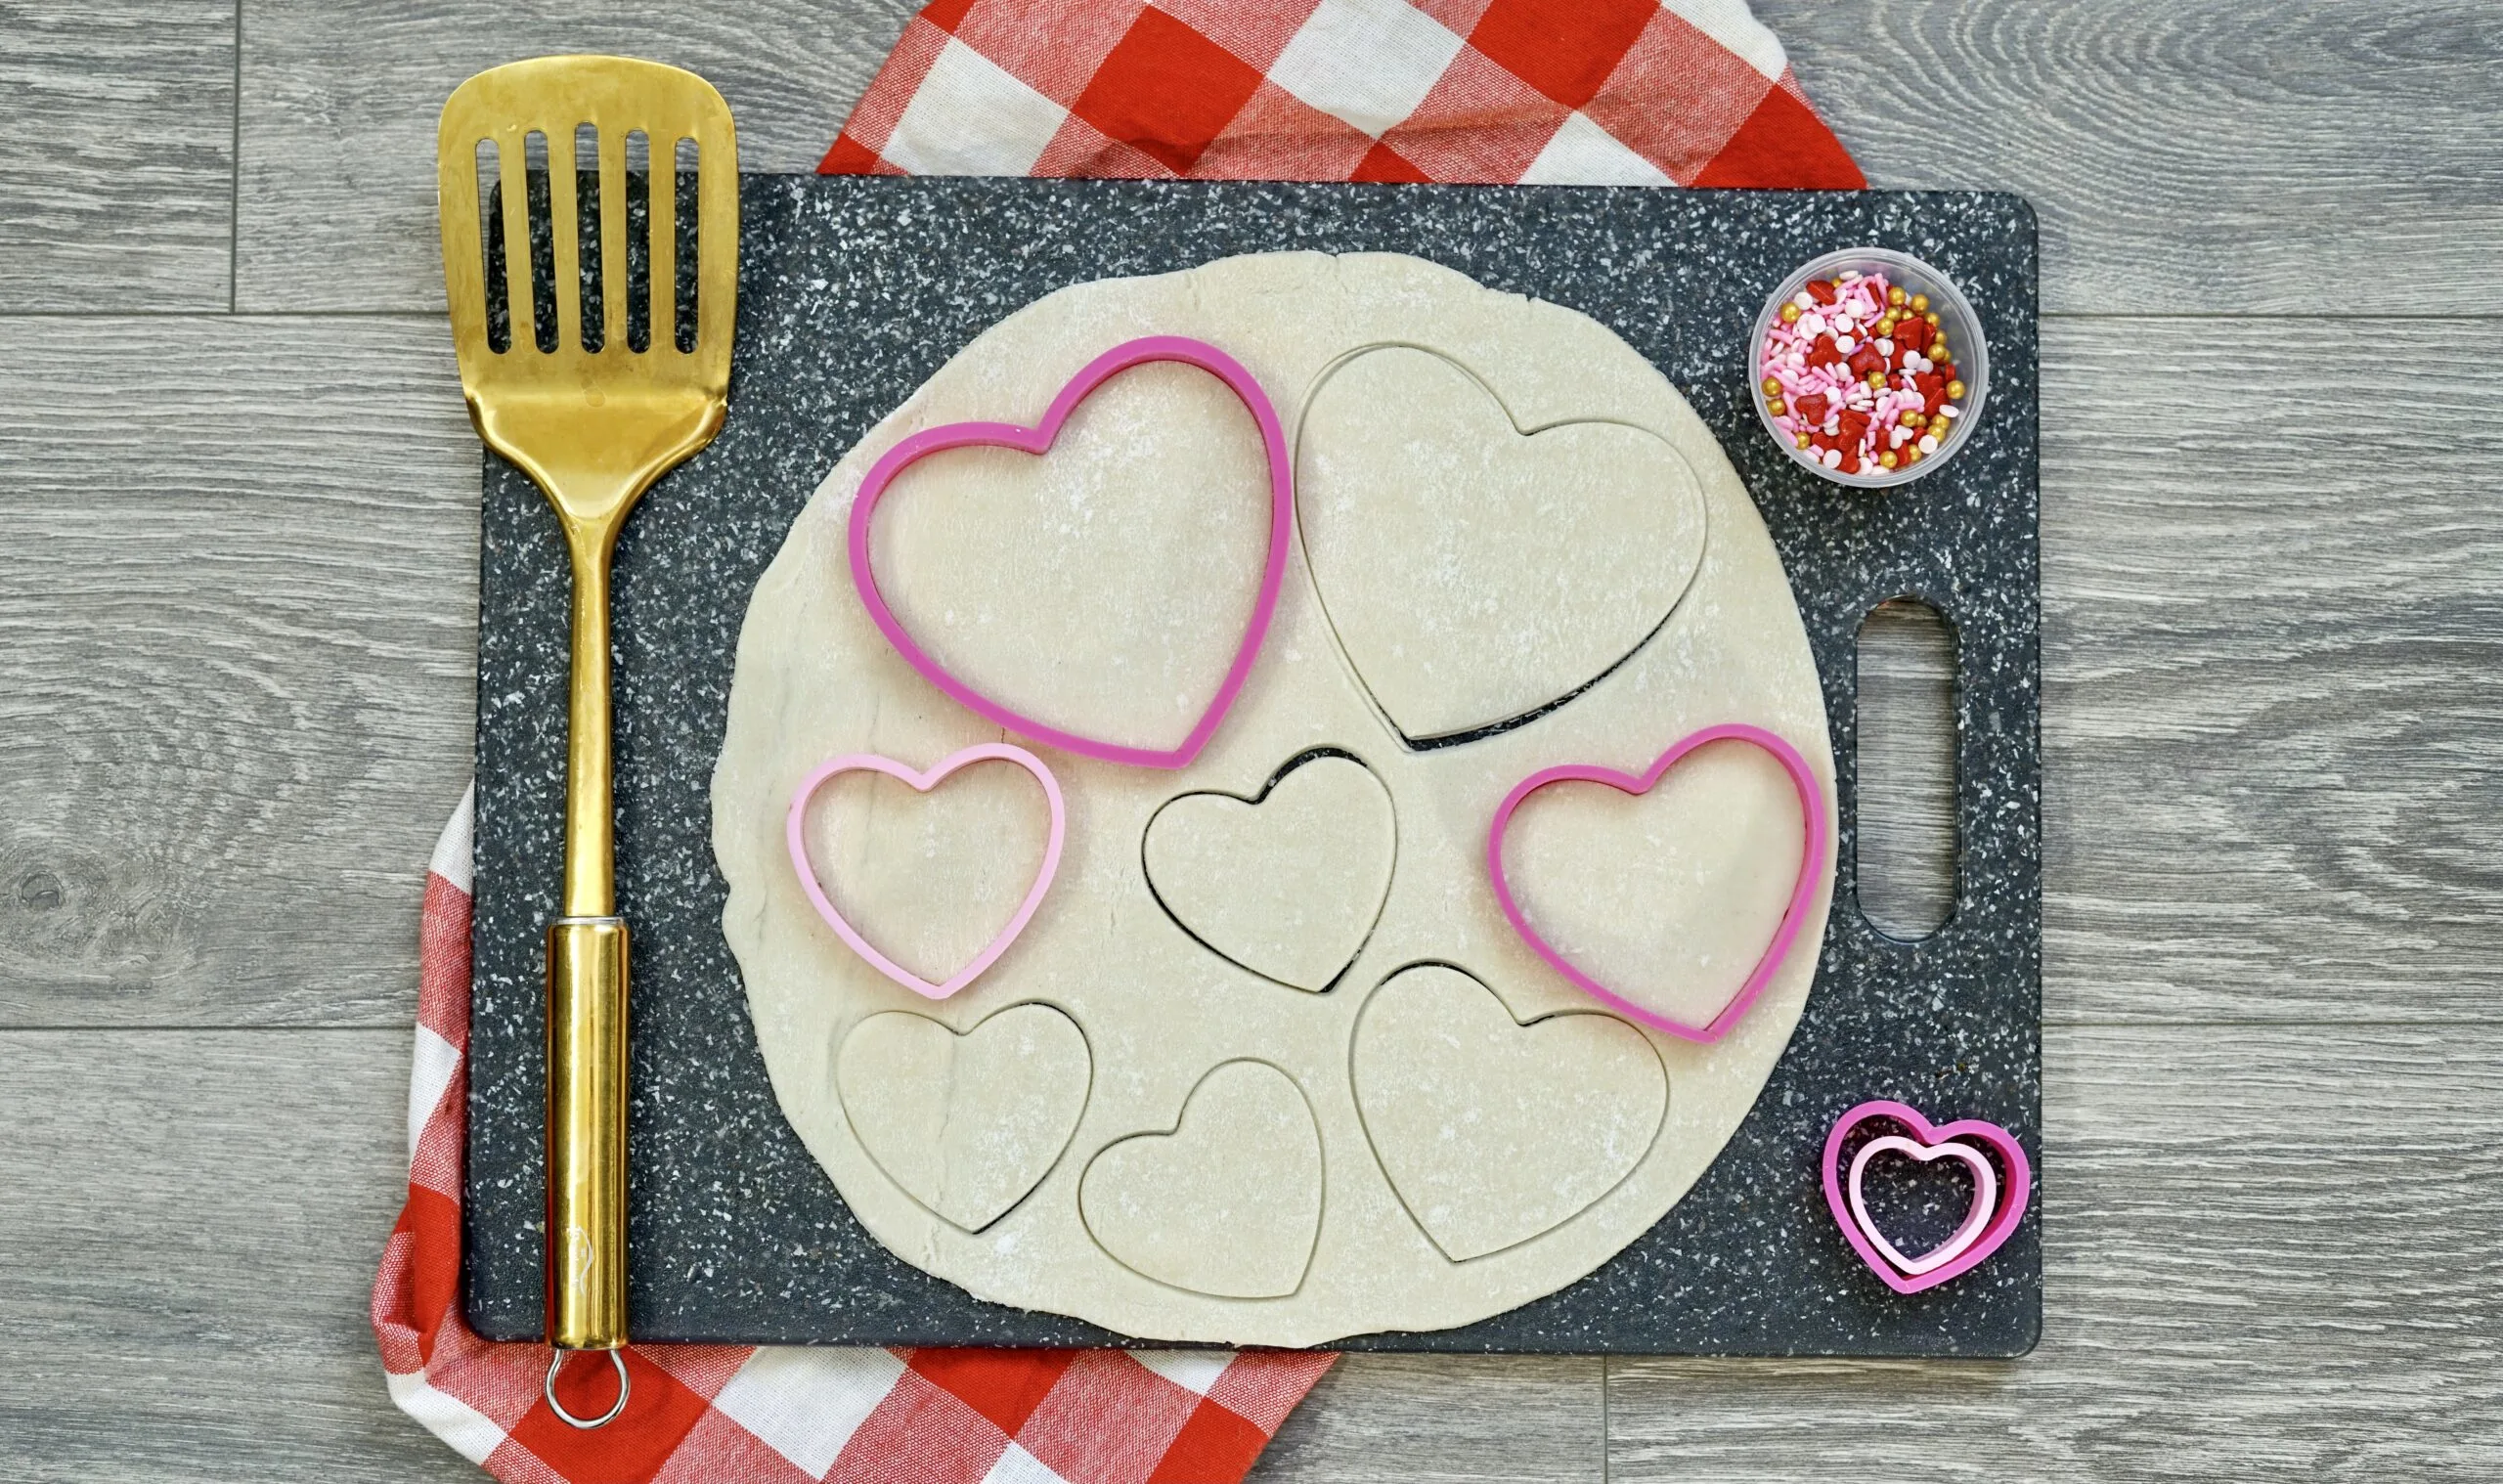 how to make heart shape pop-tarts